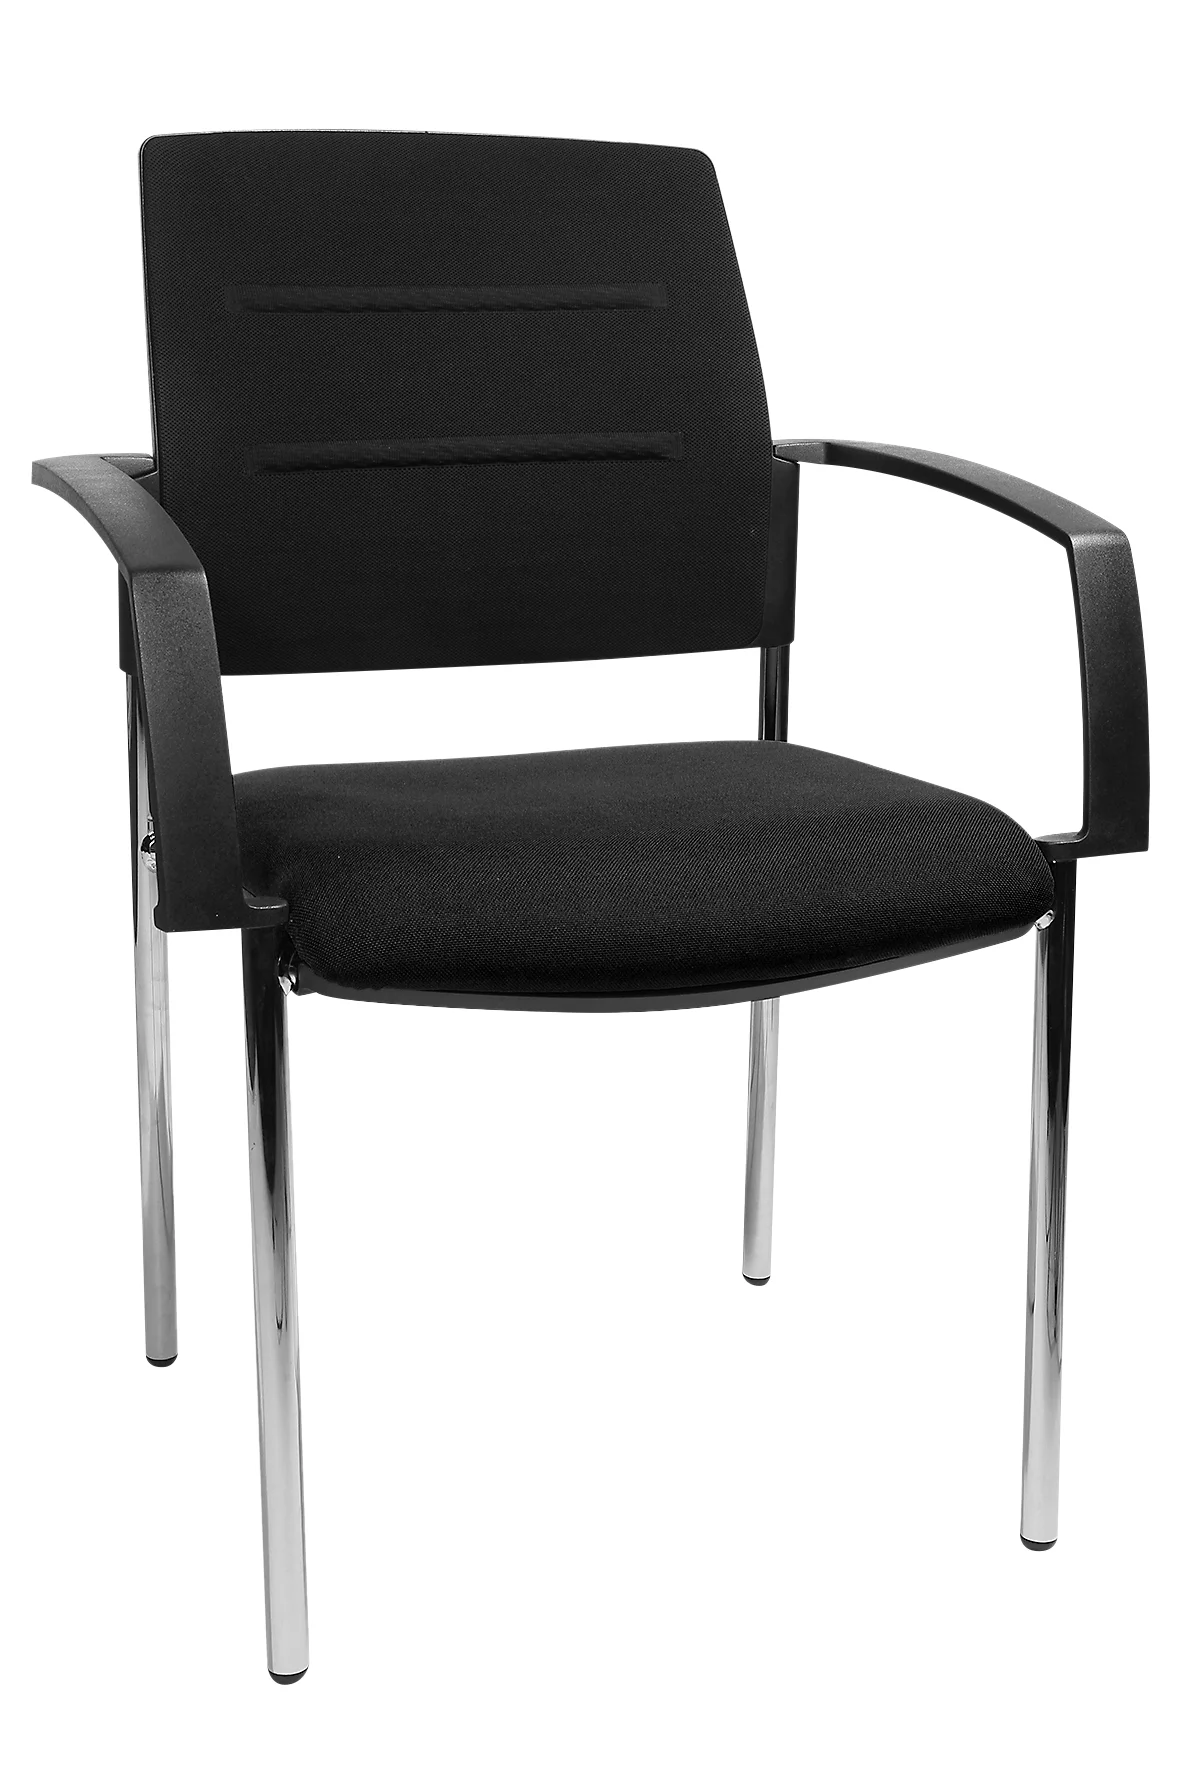 Schäfer Shop Pure Bezoekersstoel SSI PROLINE Visit S1, zwart